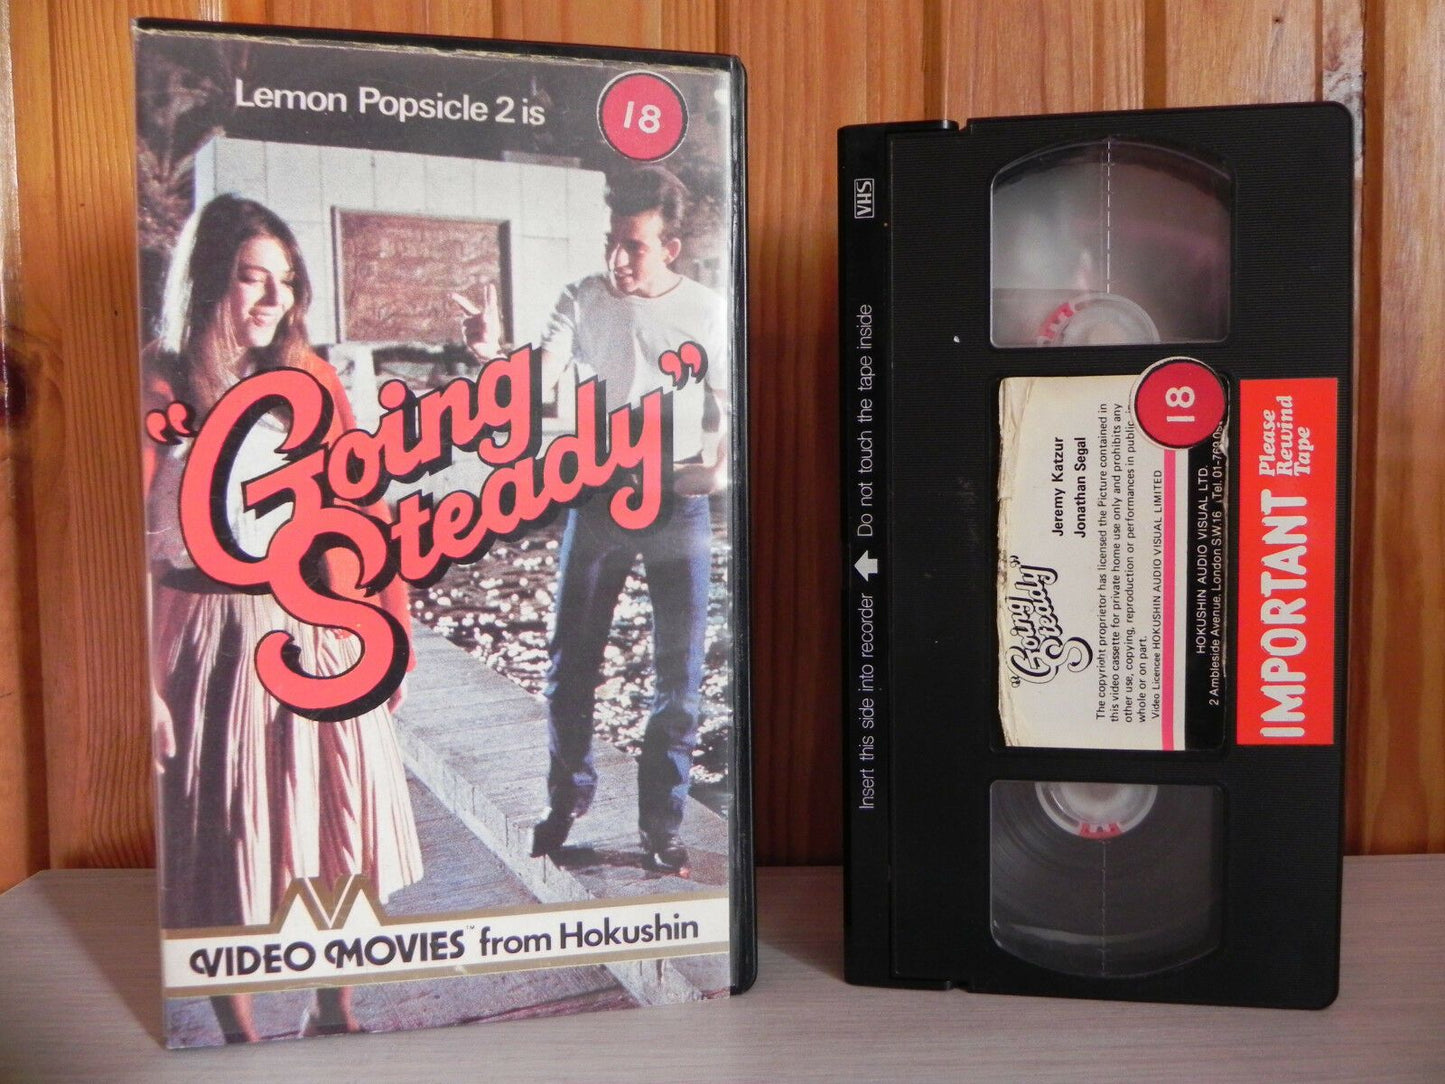 Lemon Popsicle 2 - Pre-Cert - Set In 50's - Naughty Drama - Hokushin Film - VHS-